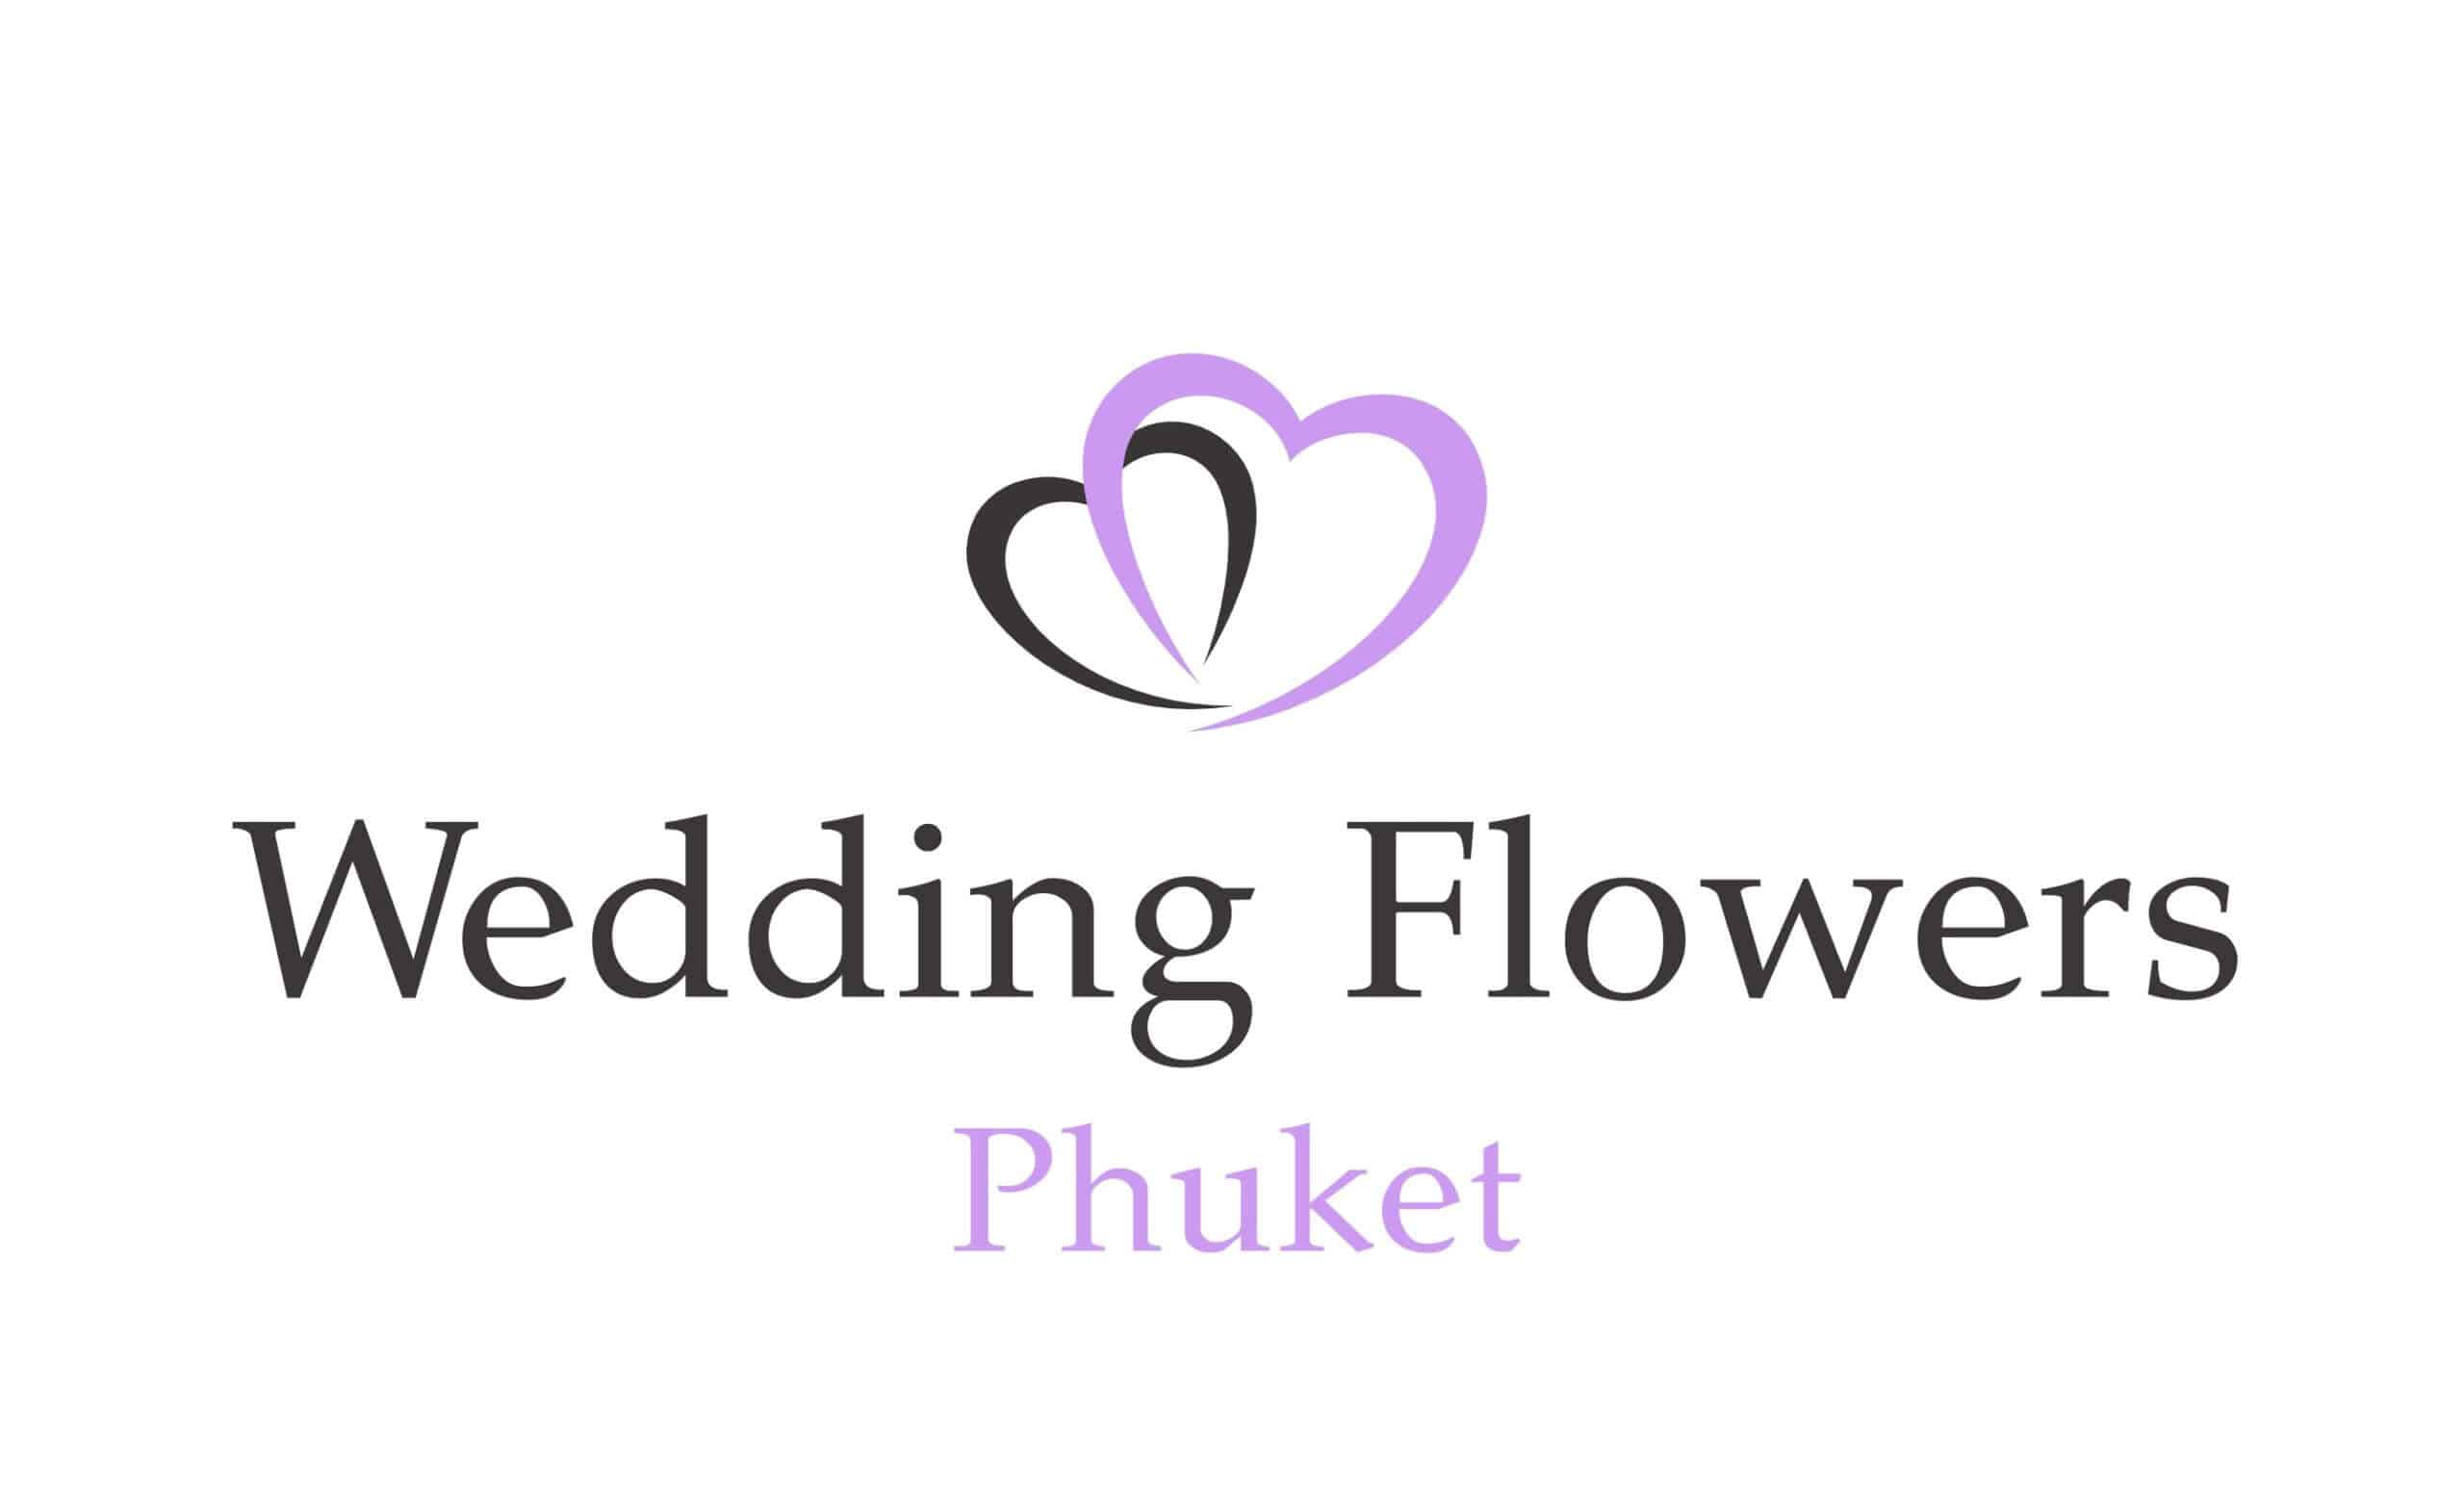 Wedding-flowers-phuket-scaled